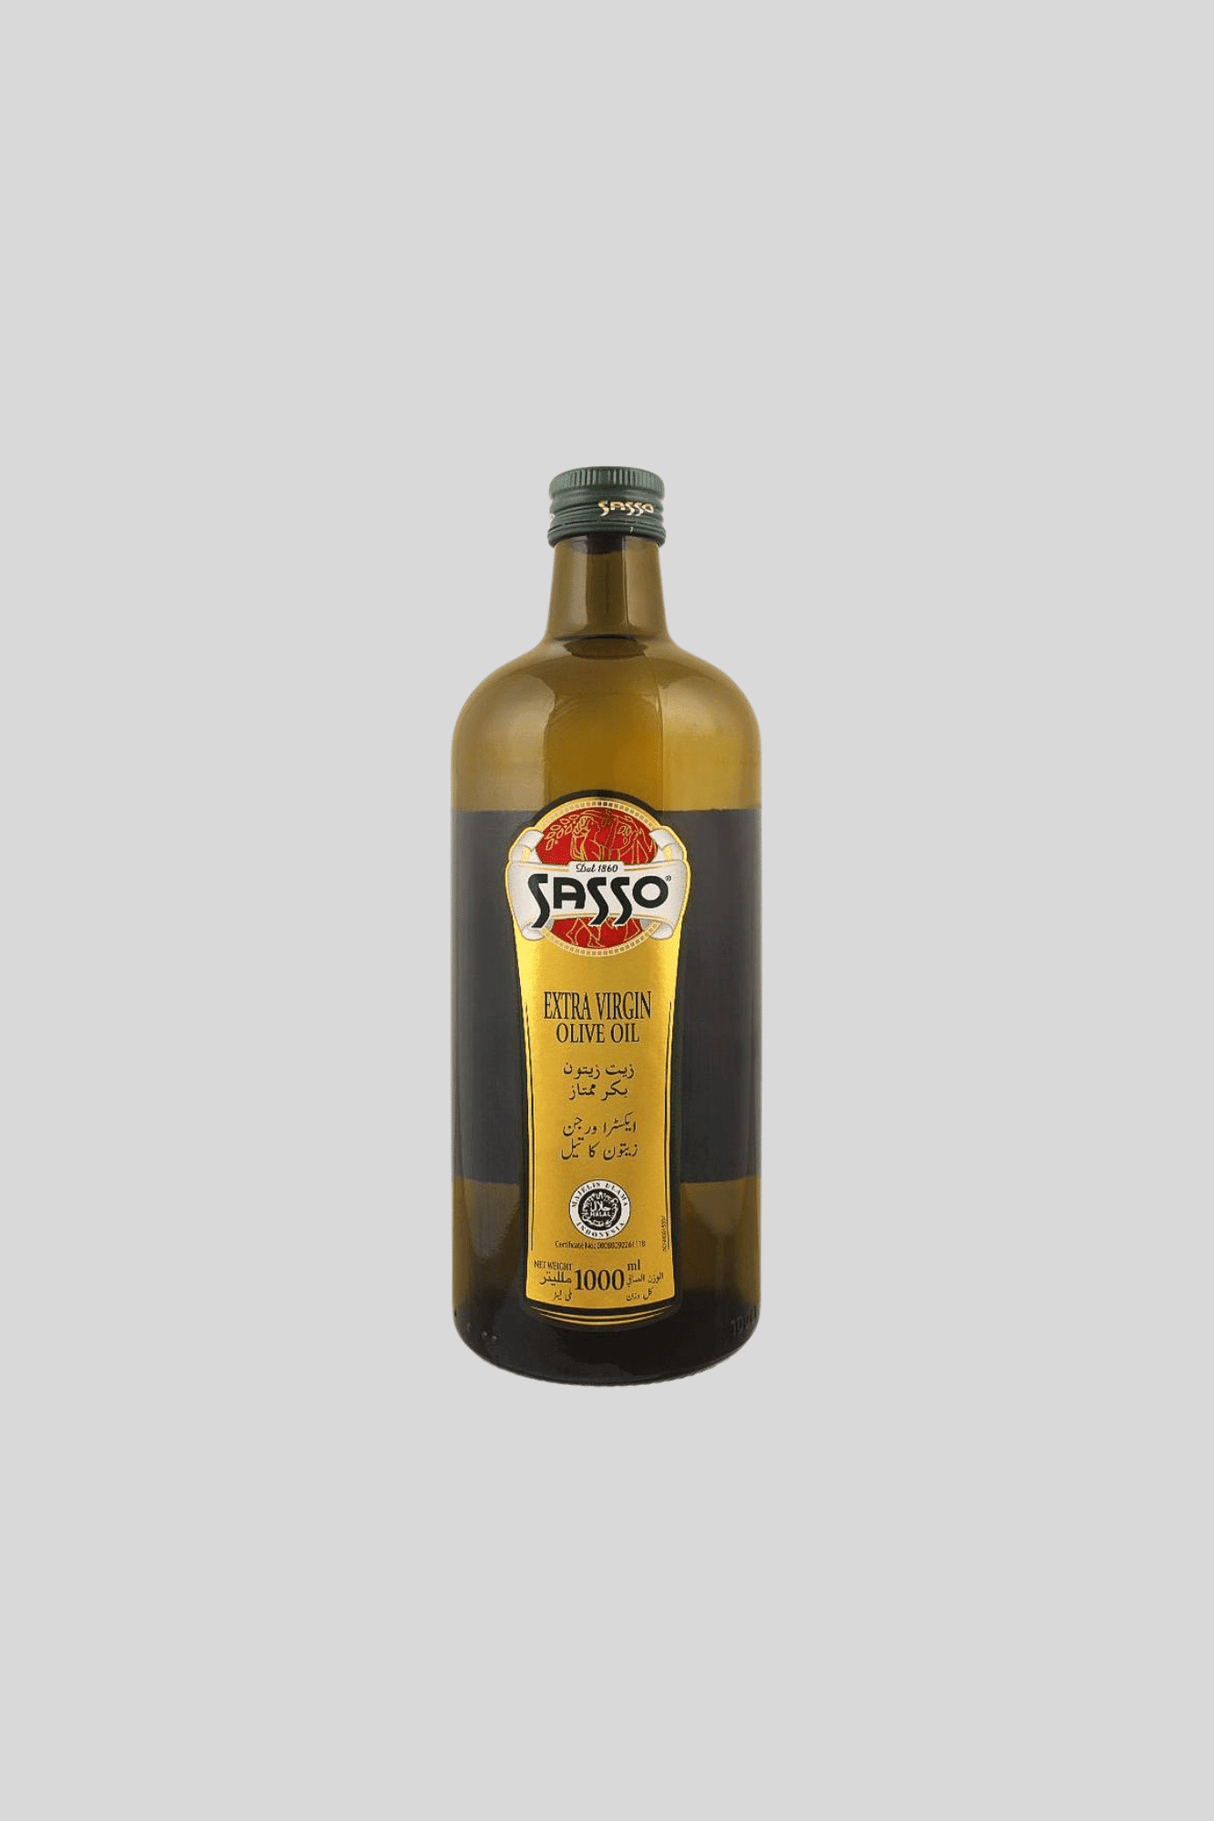 sasso extra virgin olive oil 1l bottle